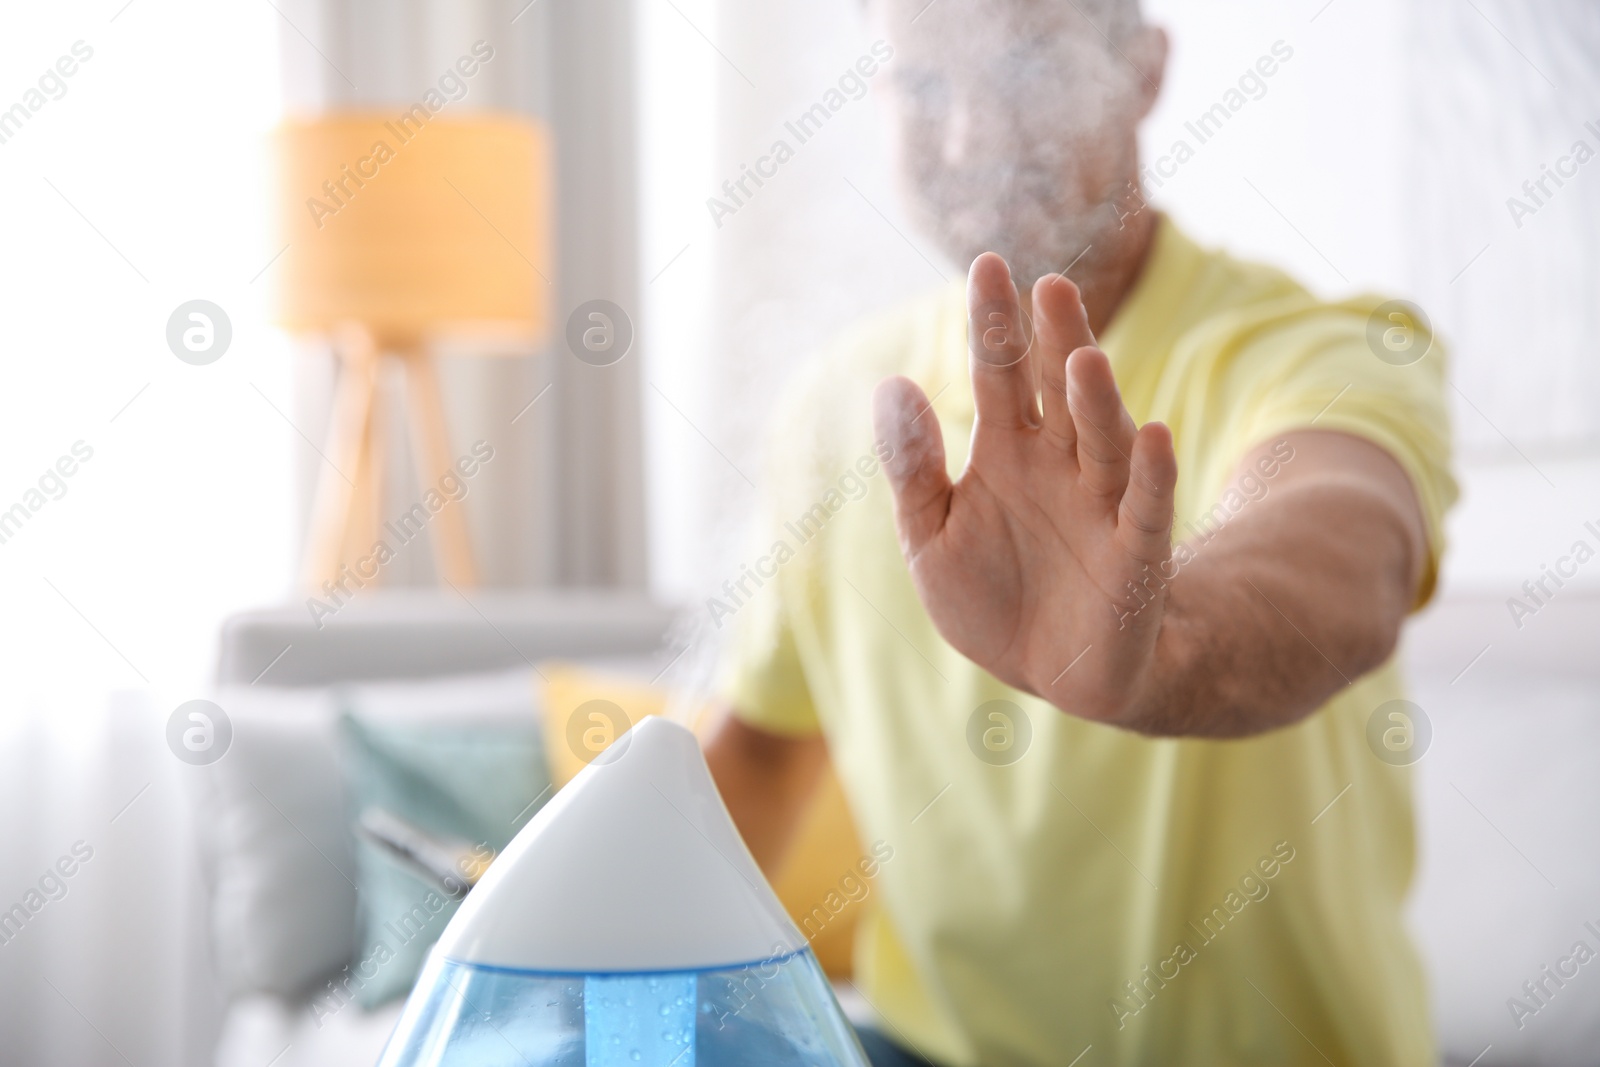 Photo of Man near modern air humidifier at home, closeup